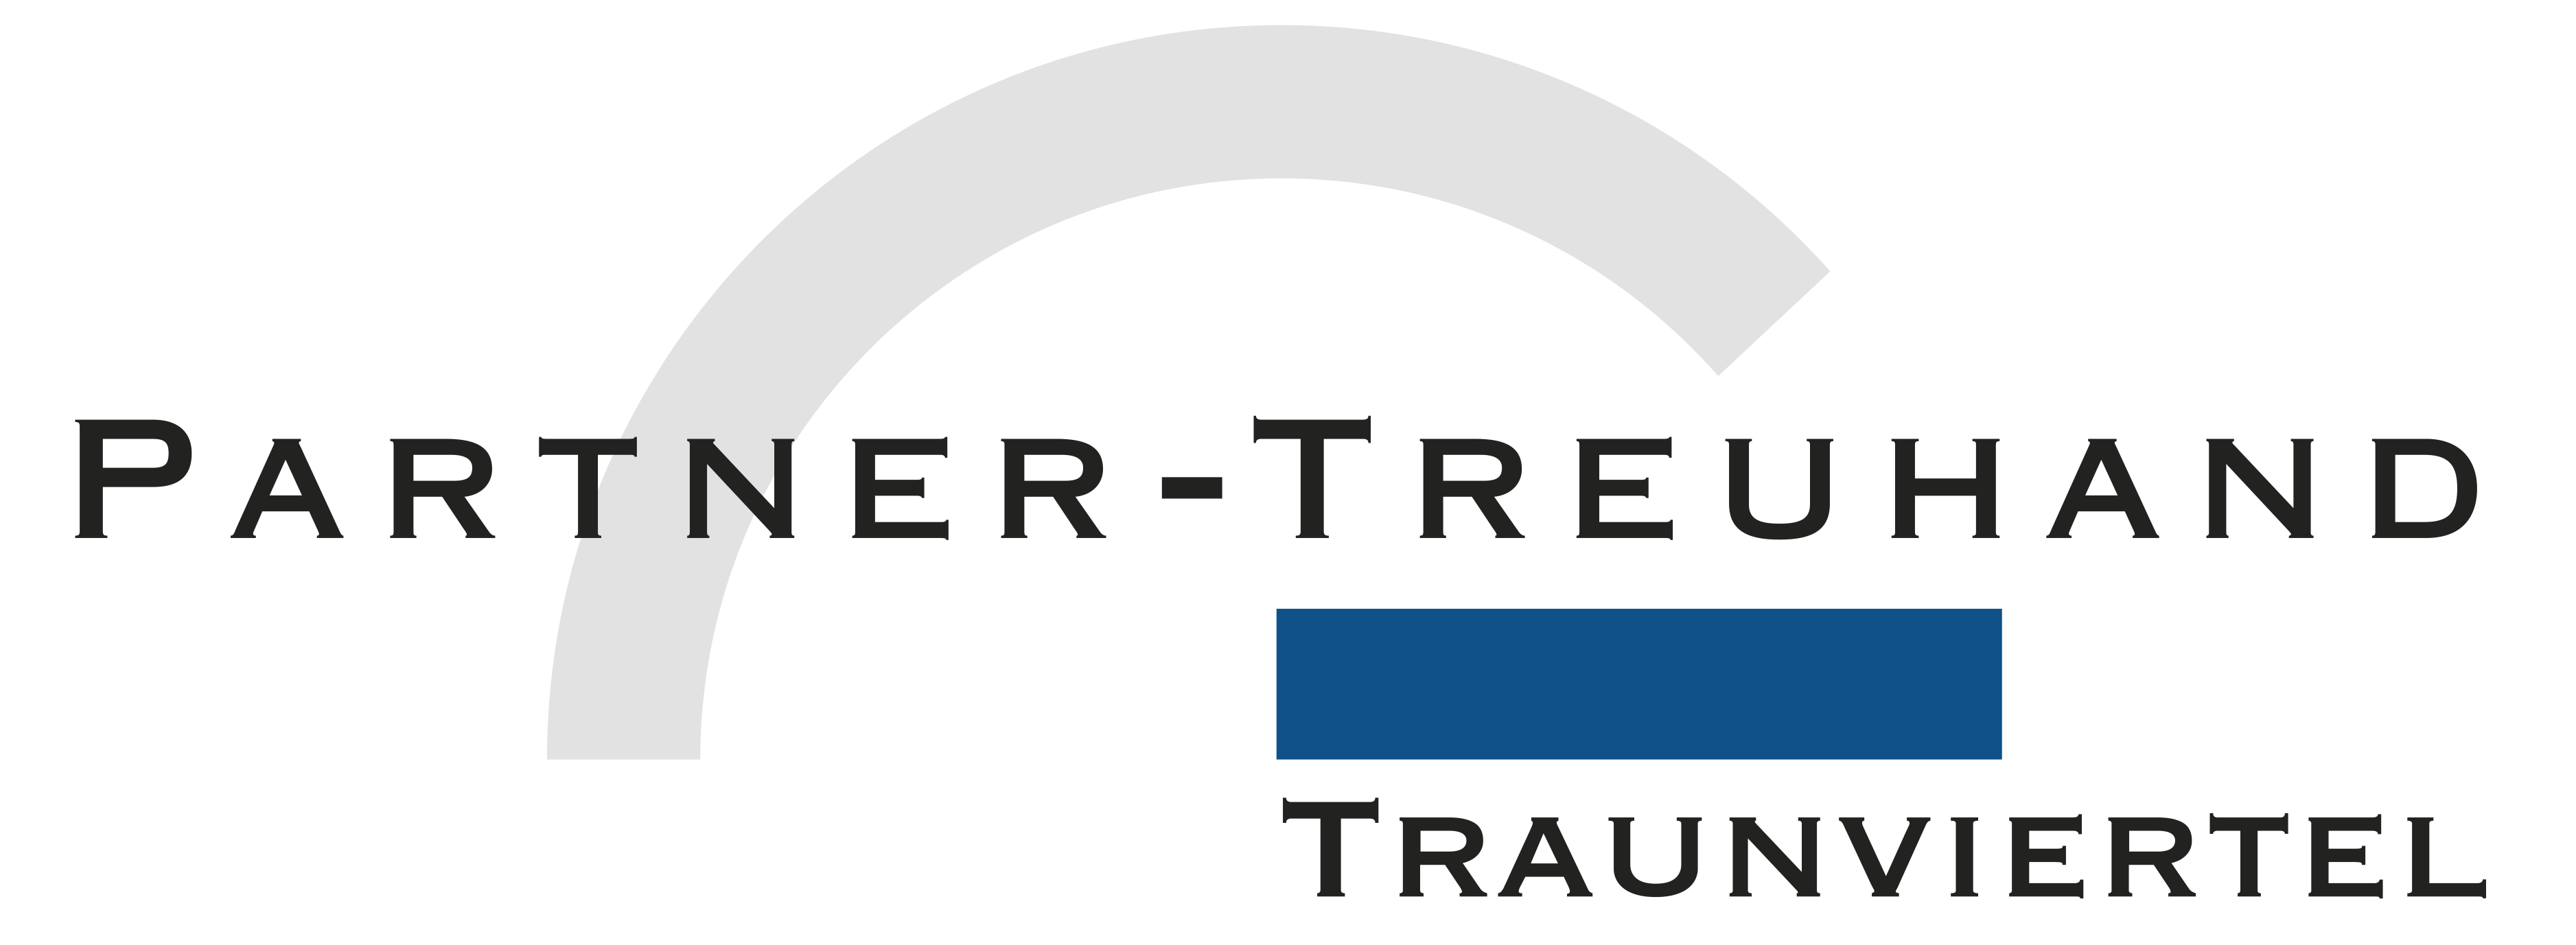 Partner-Treuhand Traunviertel GmbH Logo